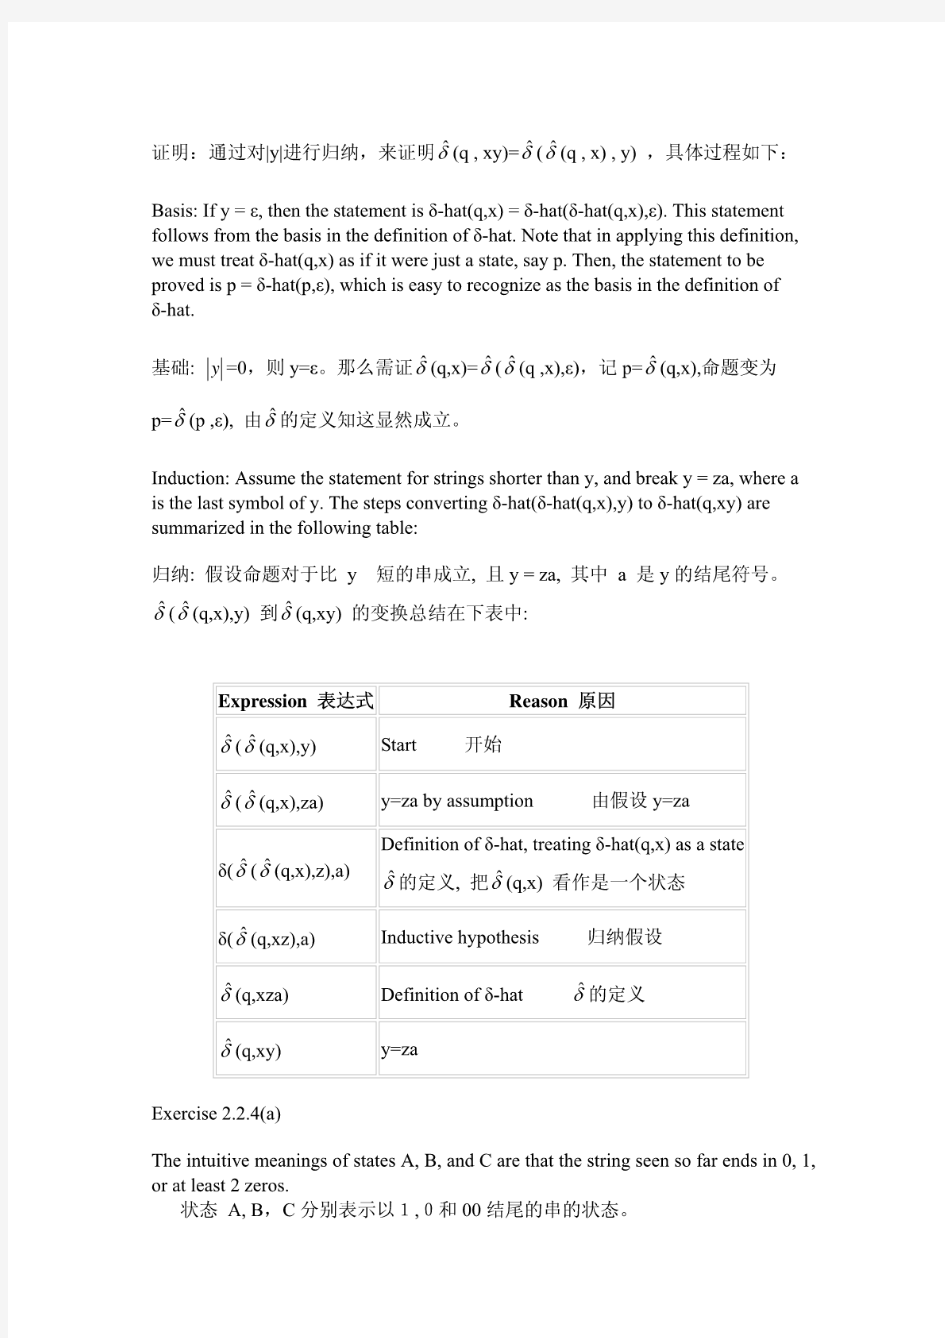 自动机理论、语言和计算导论课后习题答案(中文版)